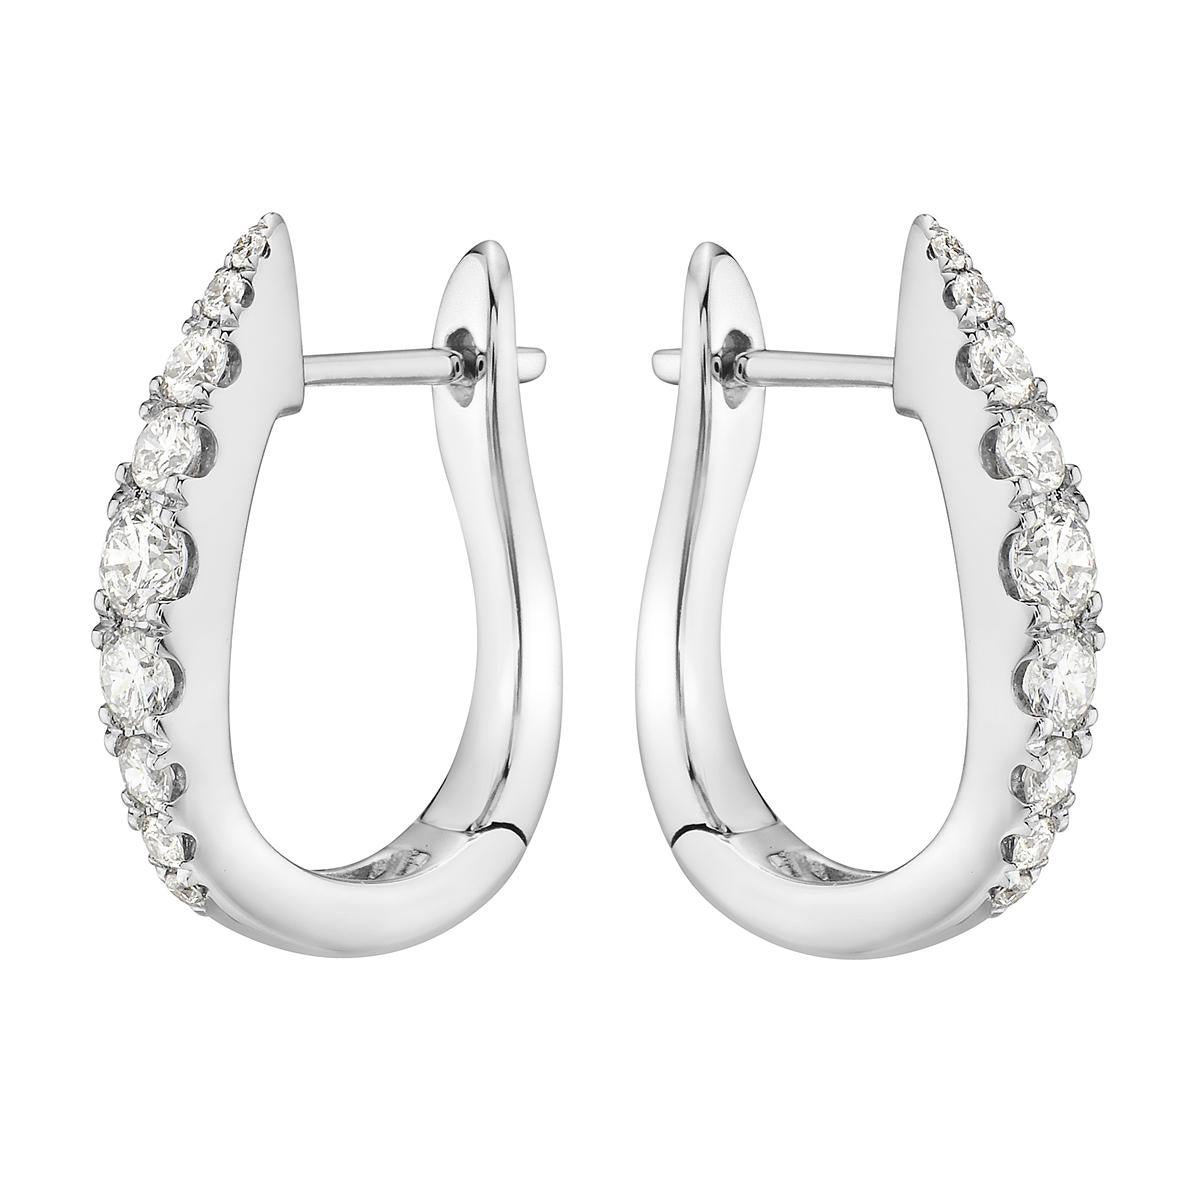 Mit diesen exquisiten weißen Reif-Ohrringen stehen Stil und Glamour im Rampenlicht. Diese 18-Karat-Ohrringe sind aus 3,5 Gramm Gold gefertigt. Diese Ohrringe sind mit Diamanten der Farbe G VS2 geschmückt, die aus 18 Diamanten von insgesamt 0,55